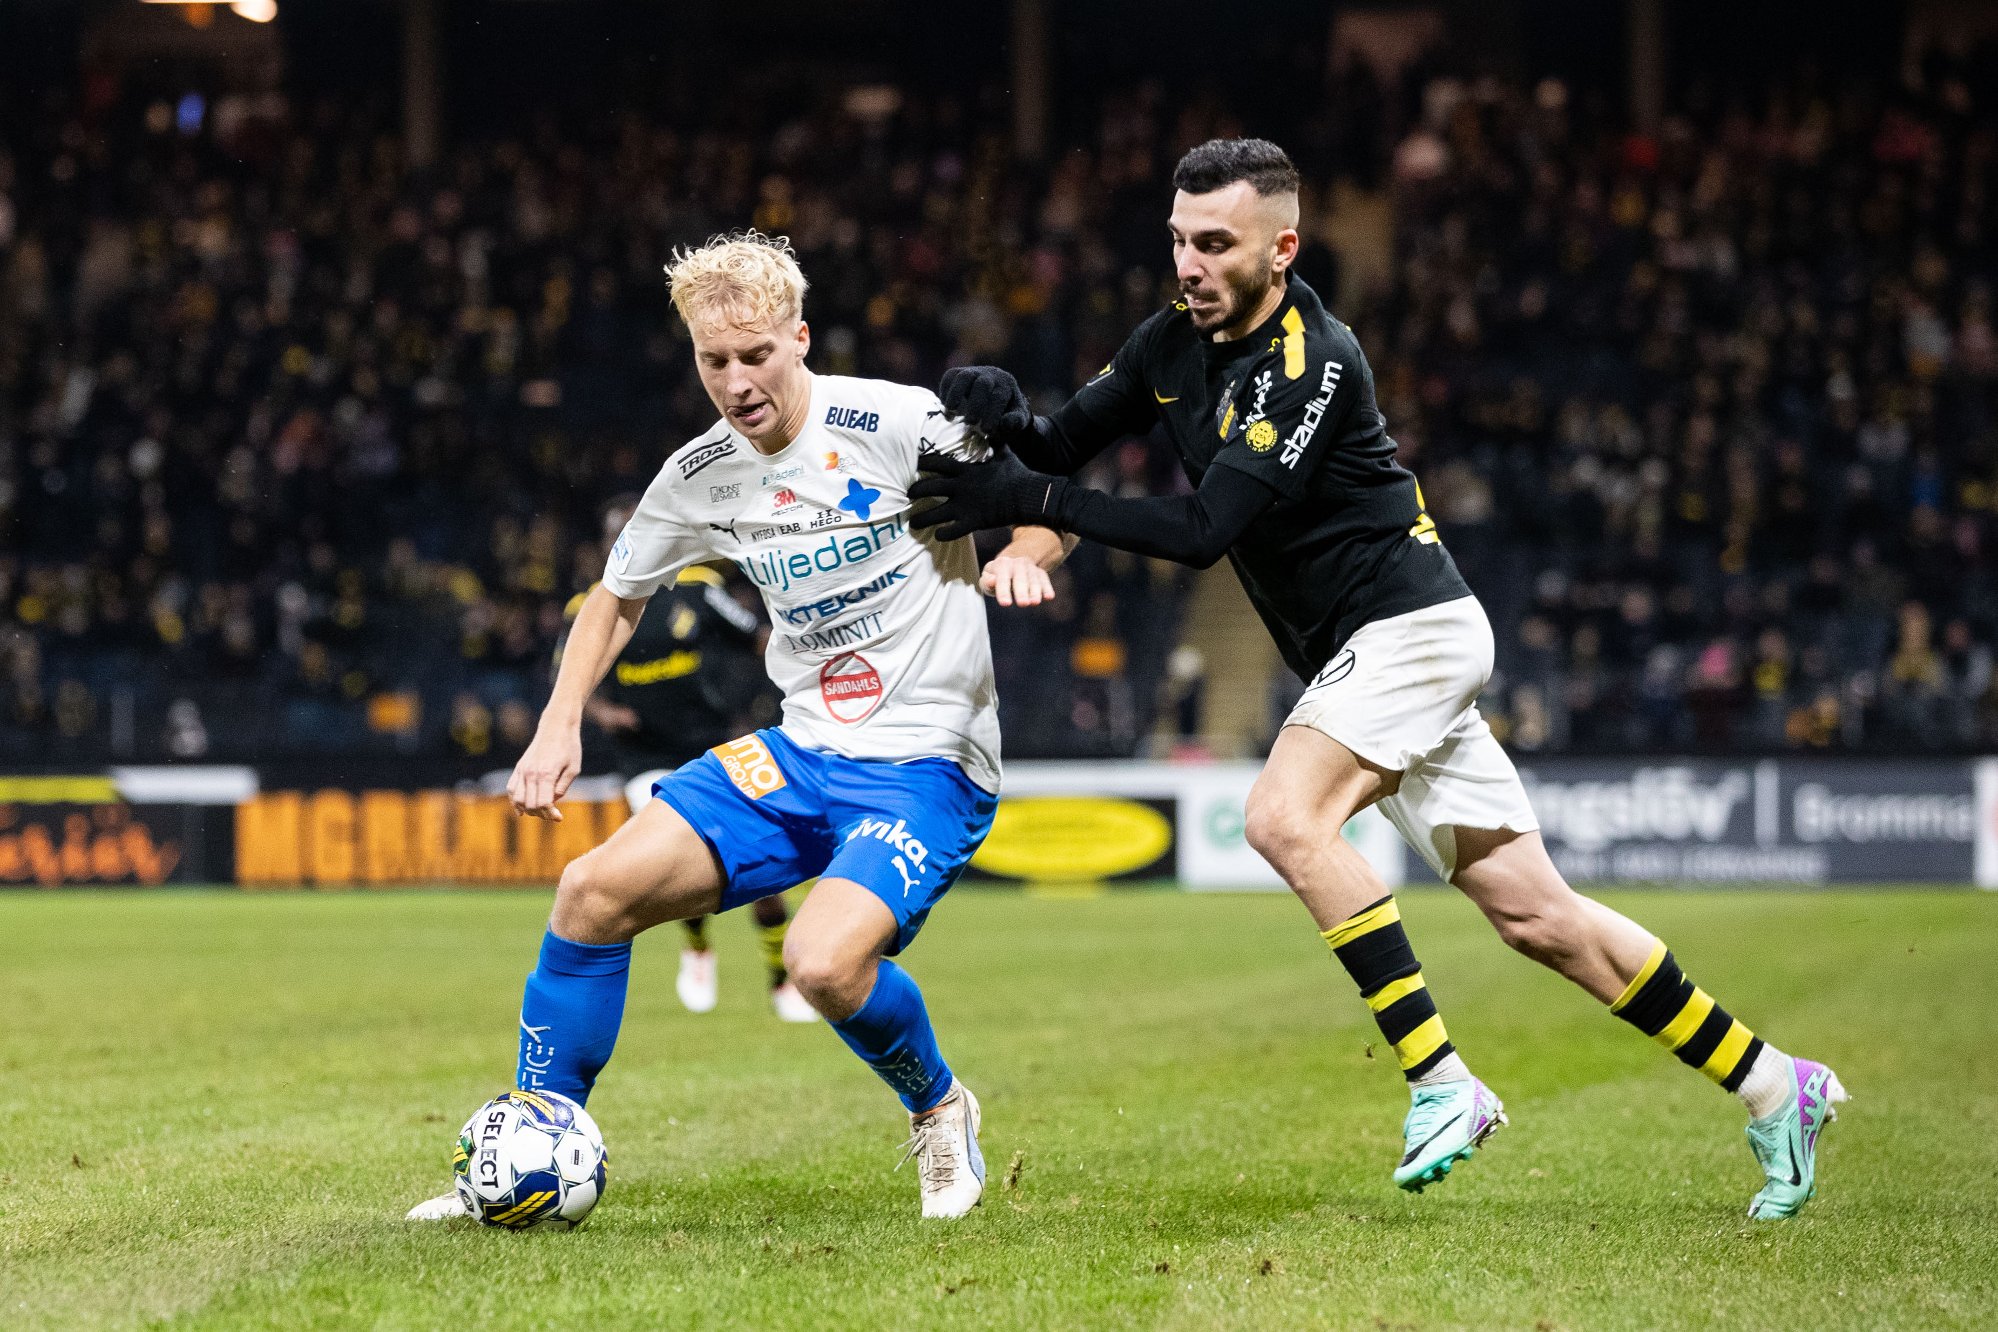 norsk fotball i kulissene: norsk klubb vil gjenta storsuksess